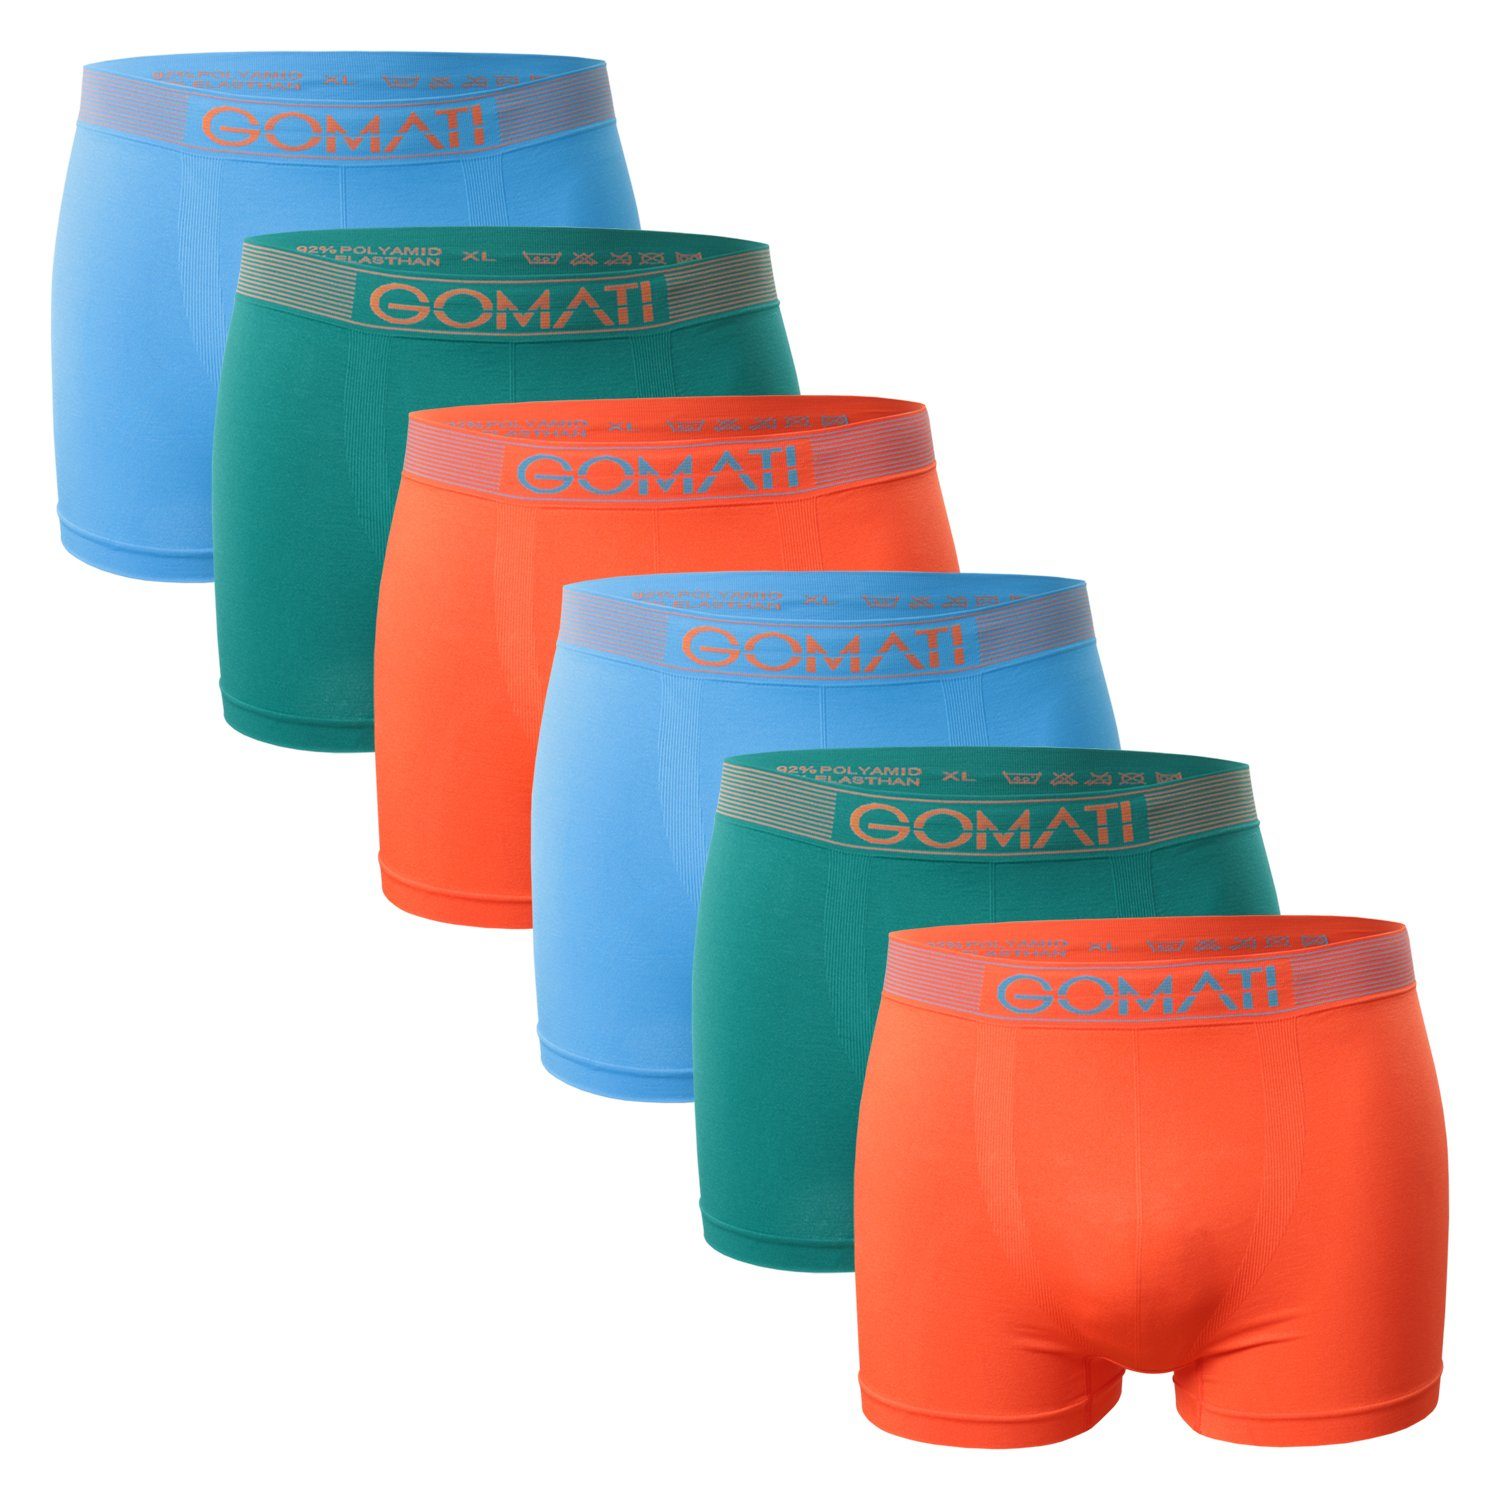 Gomati Boxershorts Herren Seamless Pants (6er Pack) Microfaser-Elasthan Boxershorts Petrol / Orange / Azure